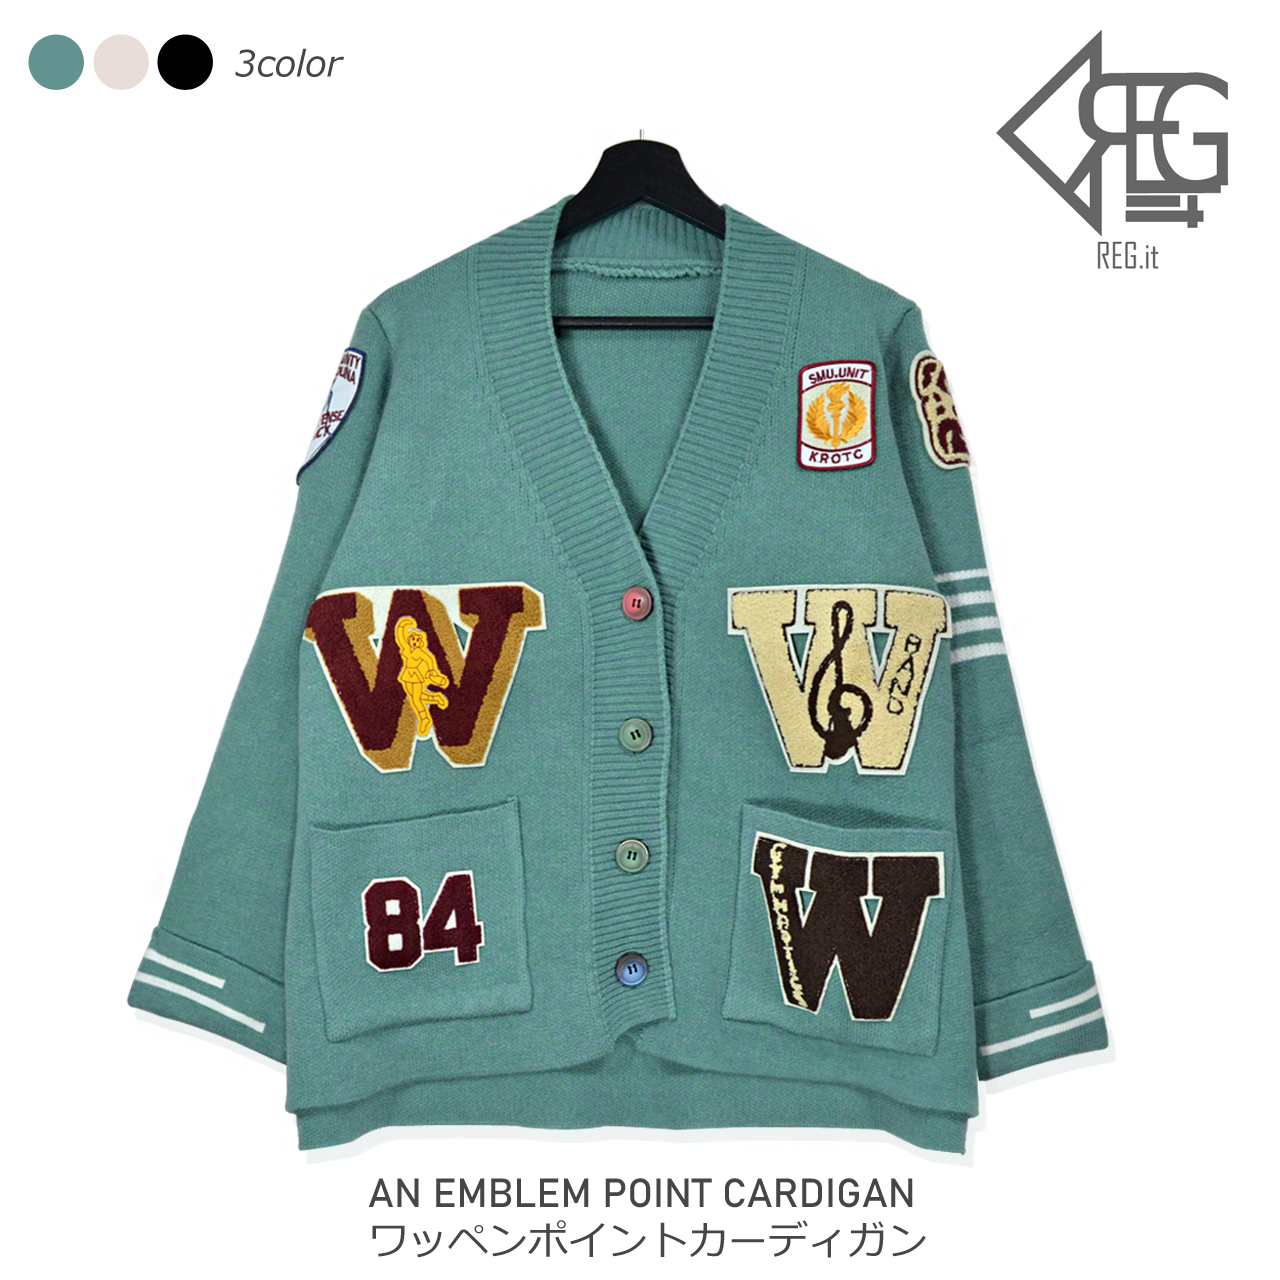 Regit 即納 An Emblem Point Cardigan 韓国ファッション カーディガン かわいい おしゃれ 個性的なカーディガン アウター Regit